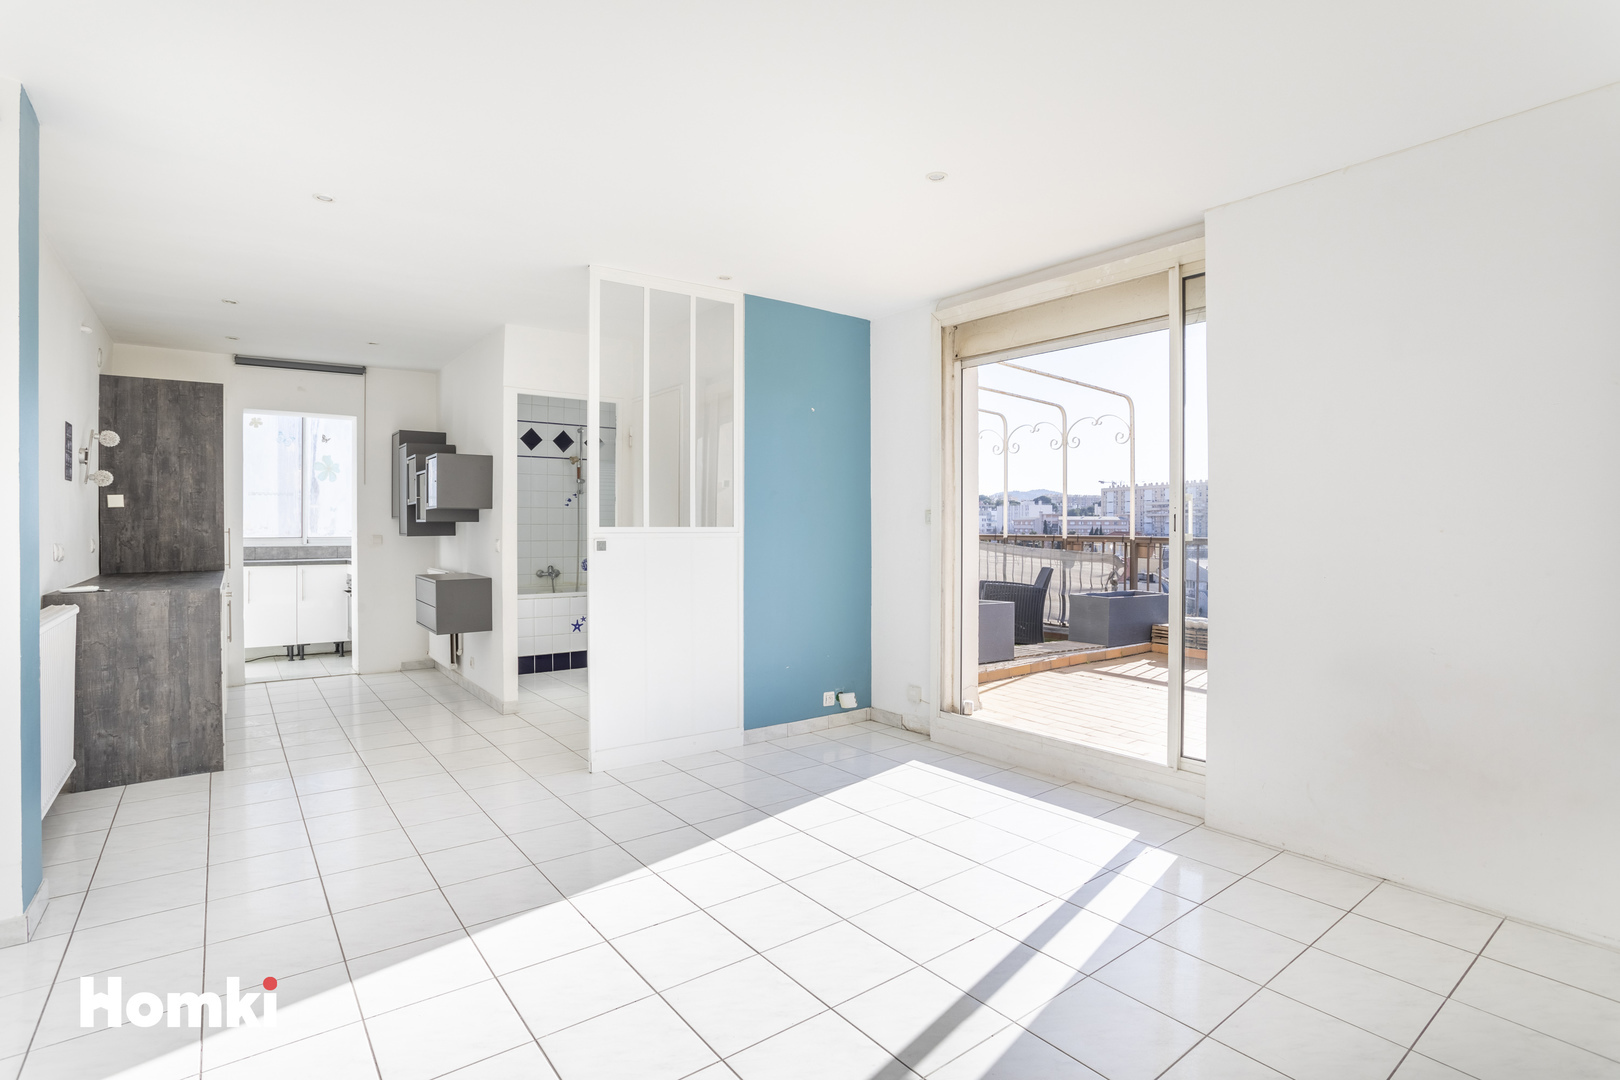 Homki - Vente Appartement  de 31.0 m² à Marseille 13010